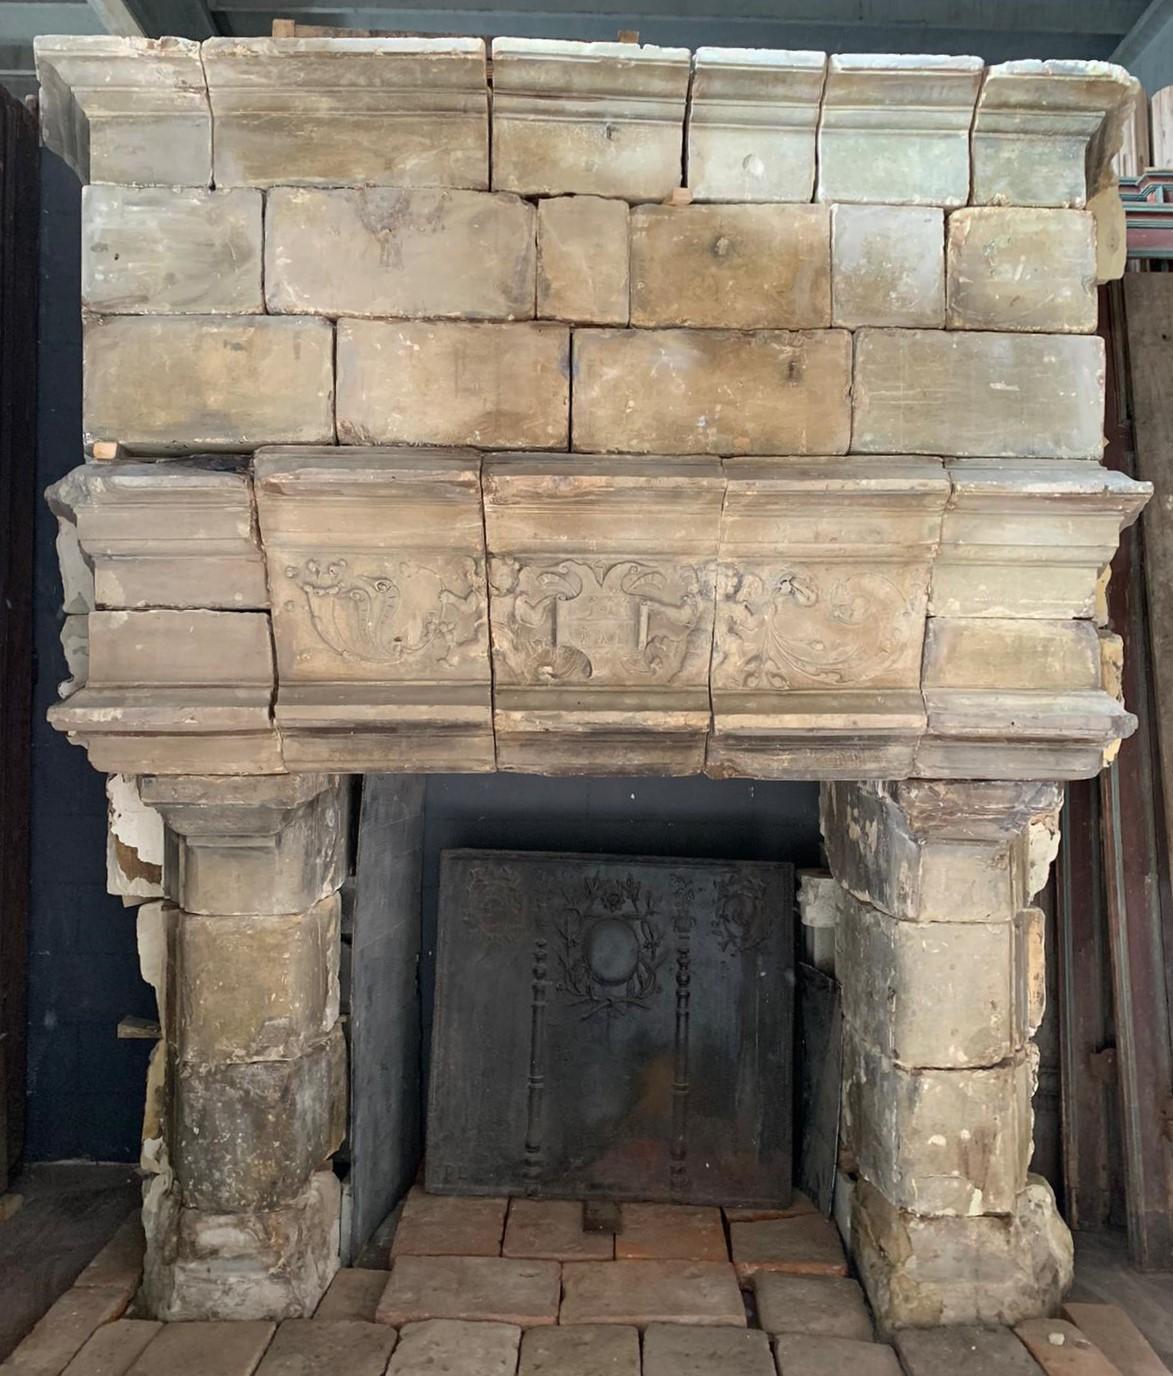 Importante cheminée à manteau, originale en pierre de Bourgogne sculptée à la main, construite au milieu du 16e siècle et d'origine française, elle provient d'un château en ruine dont on a sauvé ce qui pouvait l'être.
Vraiment grand et plein